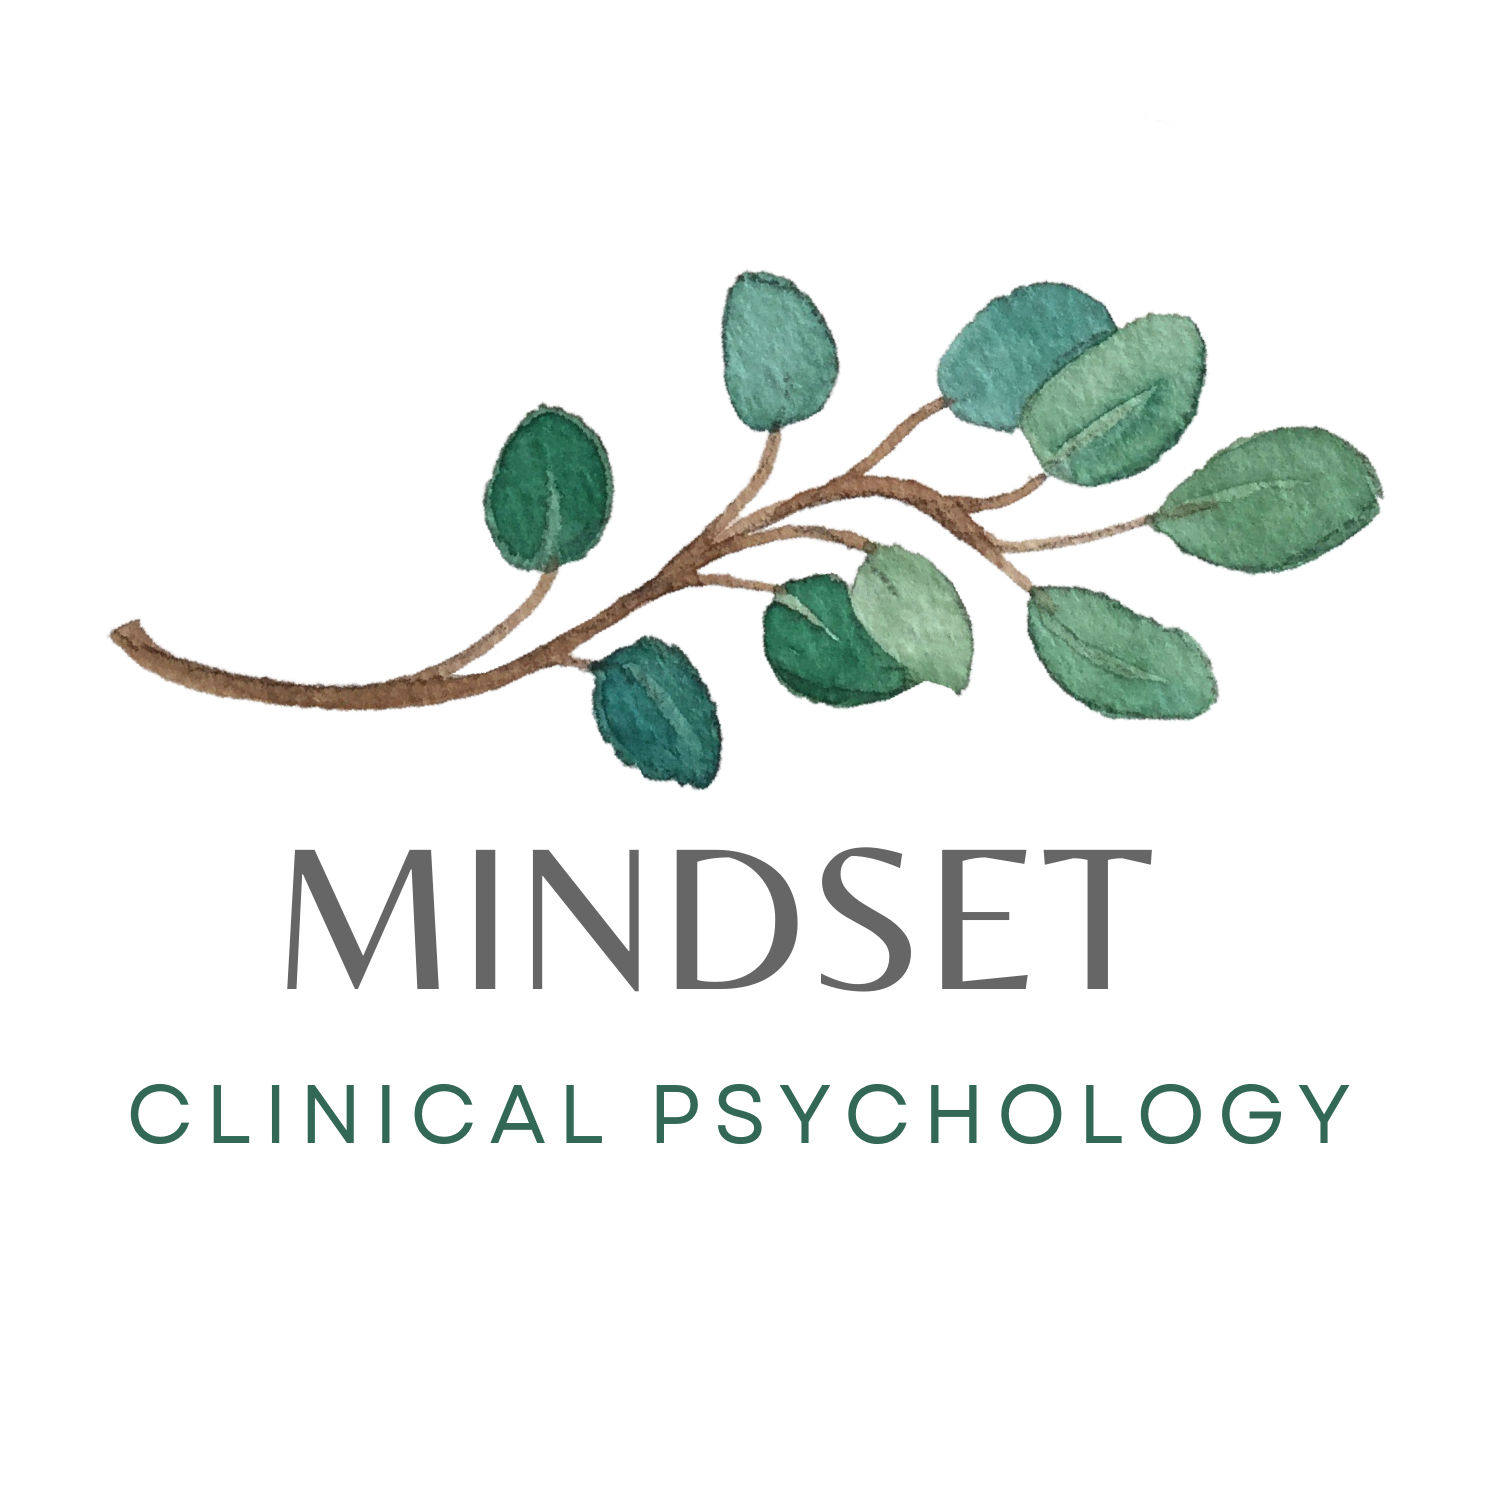 Mindset Clinical Psychology